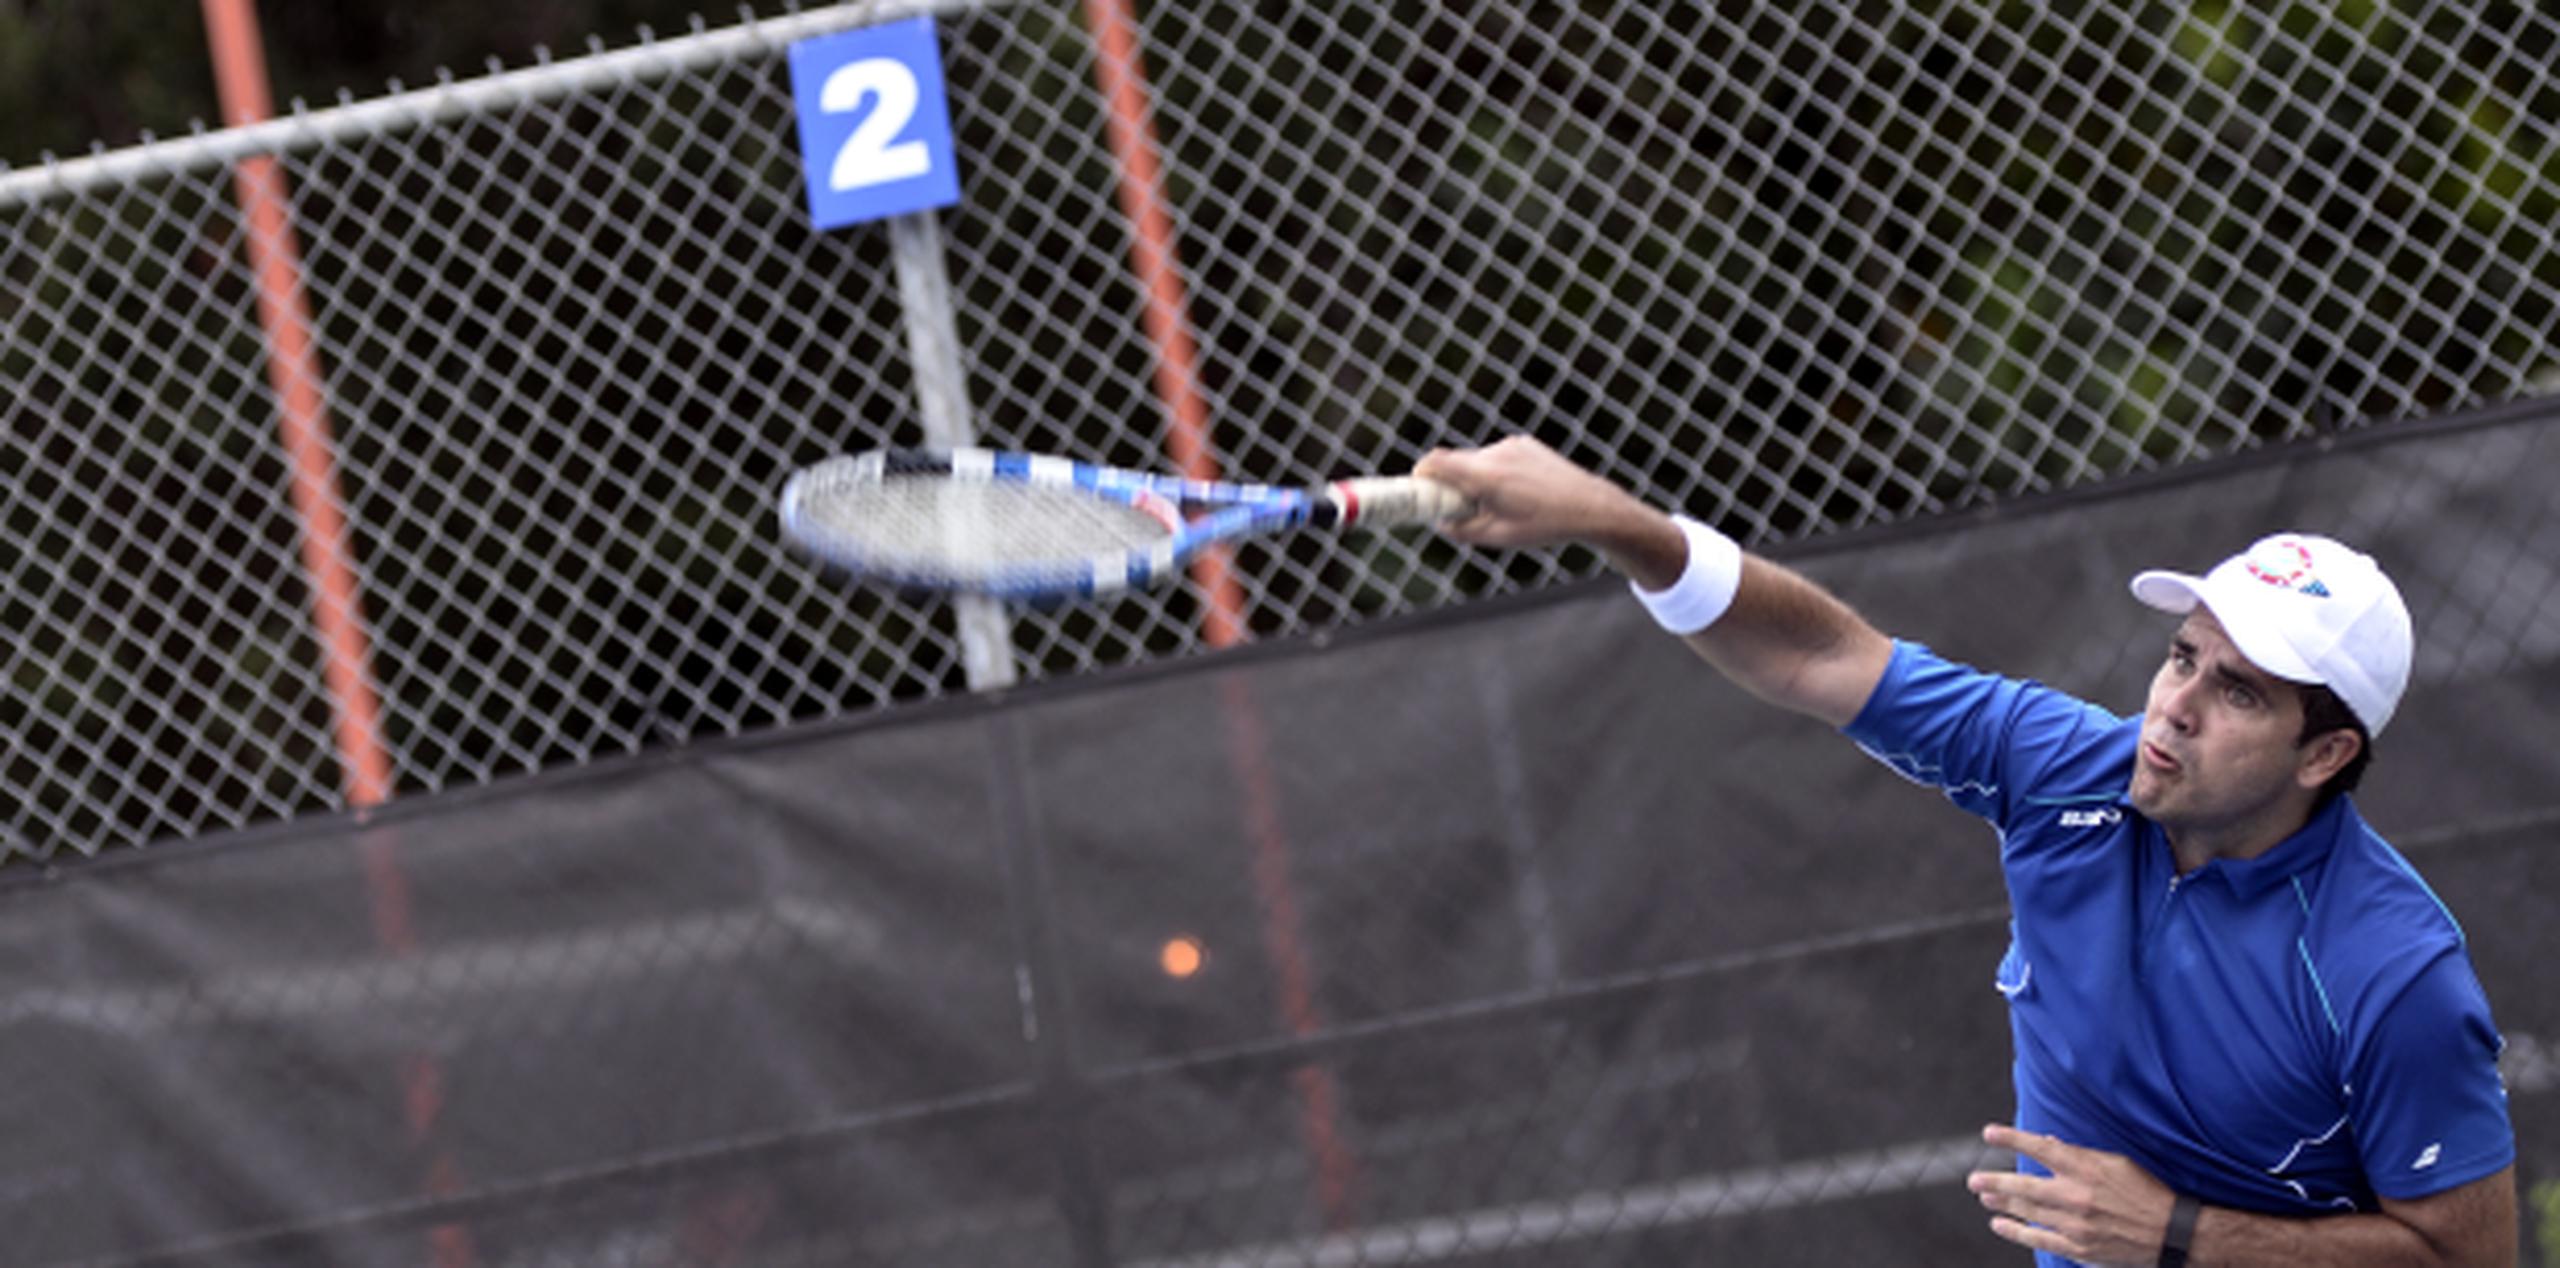 Rosselló se destacó como tenista juvenil en Puerto Rico, ganando tres campeonatos nacionales. (Foto/Gerald López)